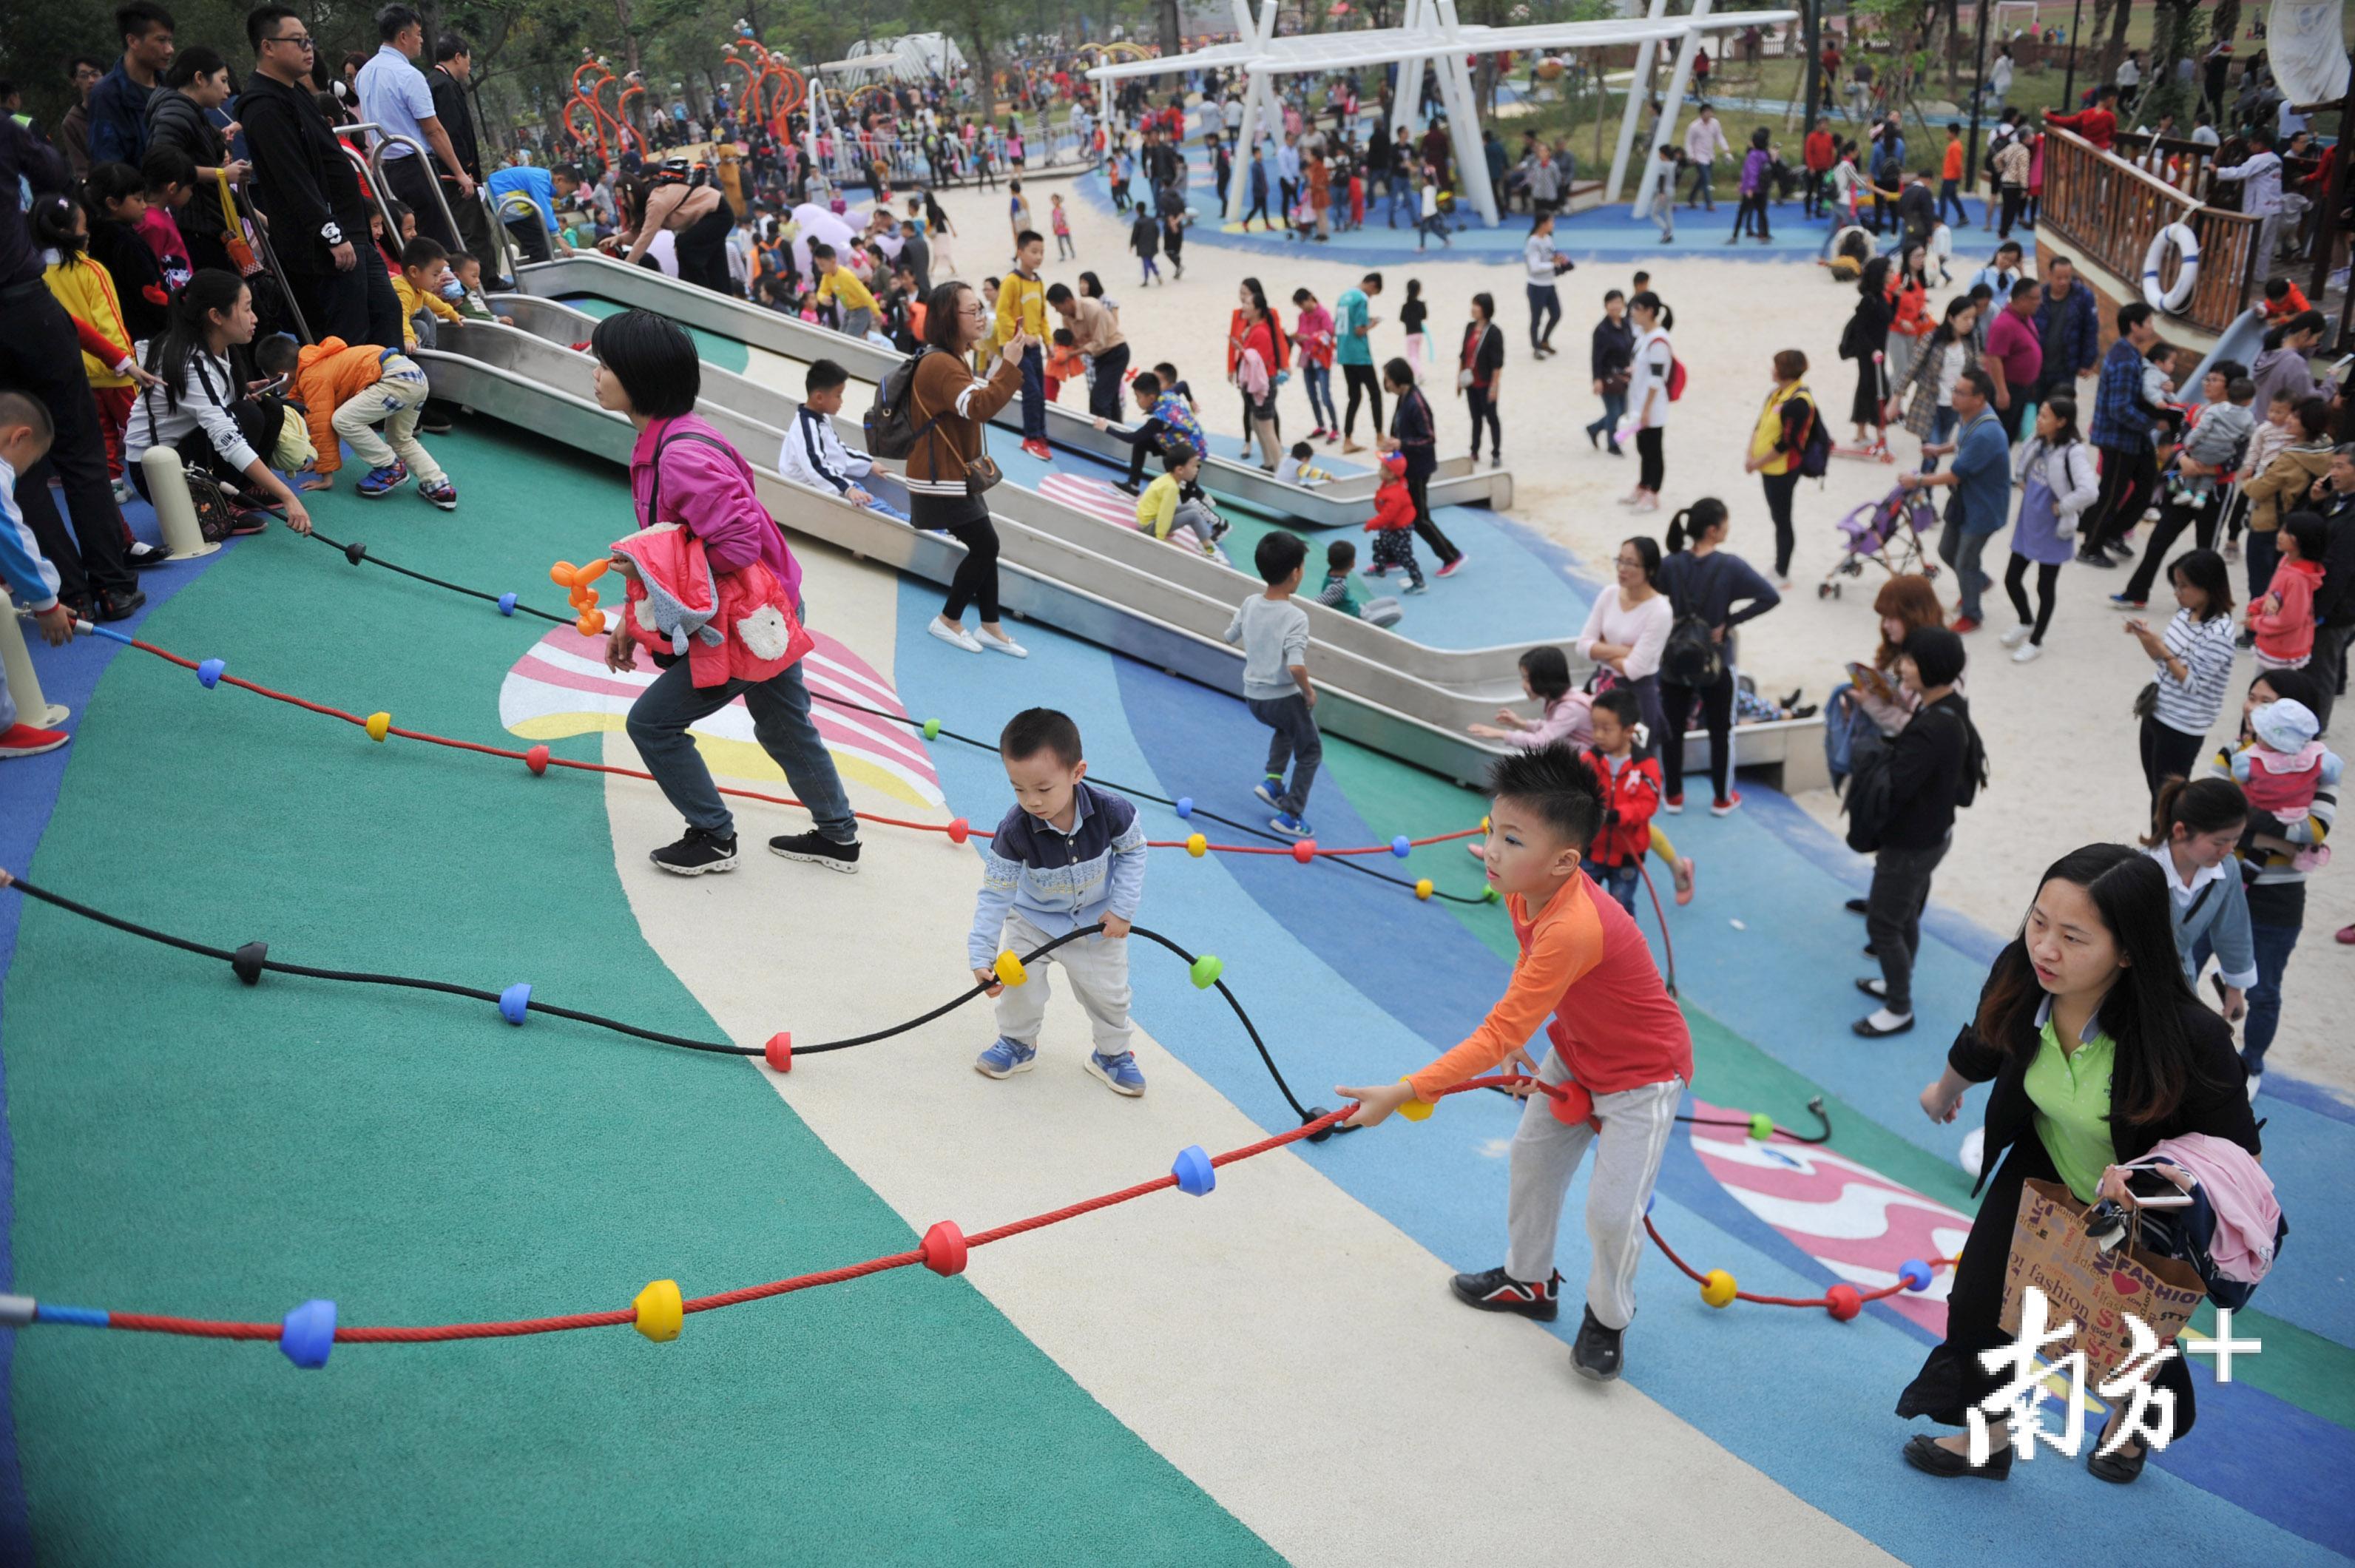 中山首个镇级儿童公园对外开放,小朋友都玩嗨了!_南朗